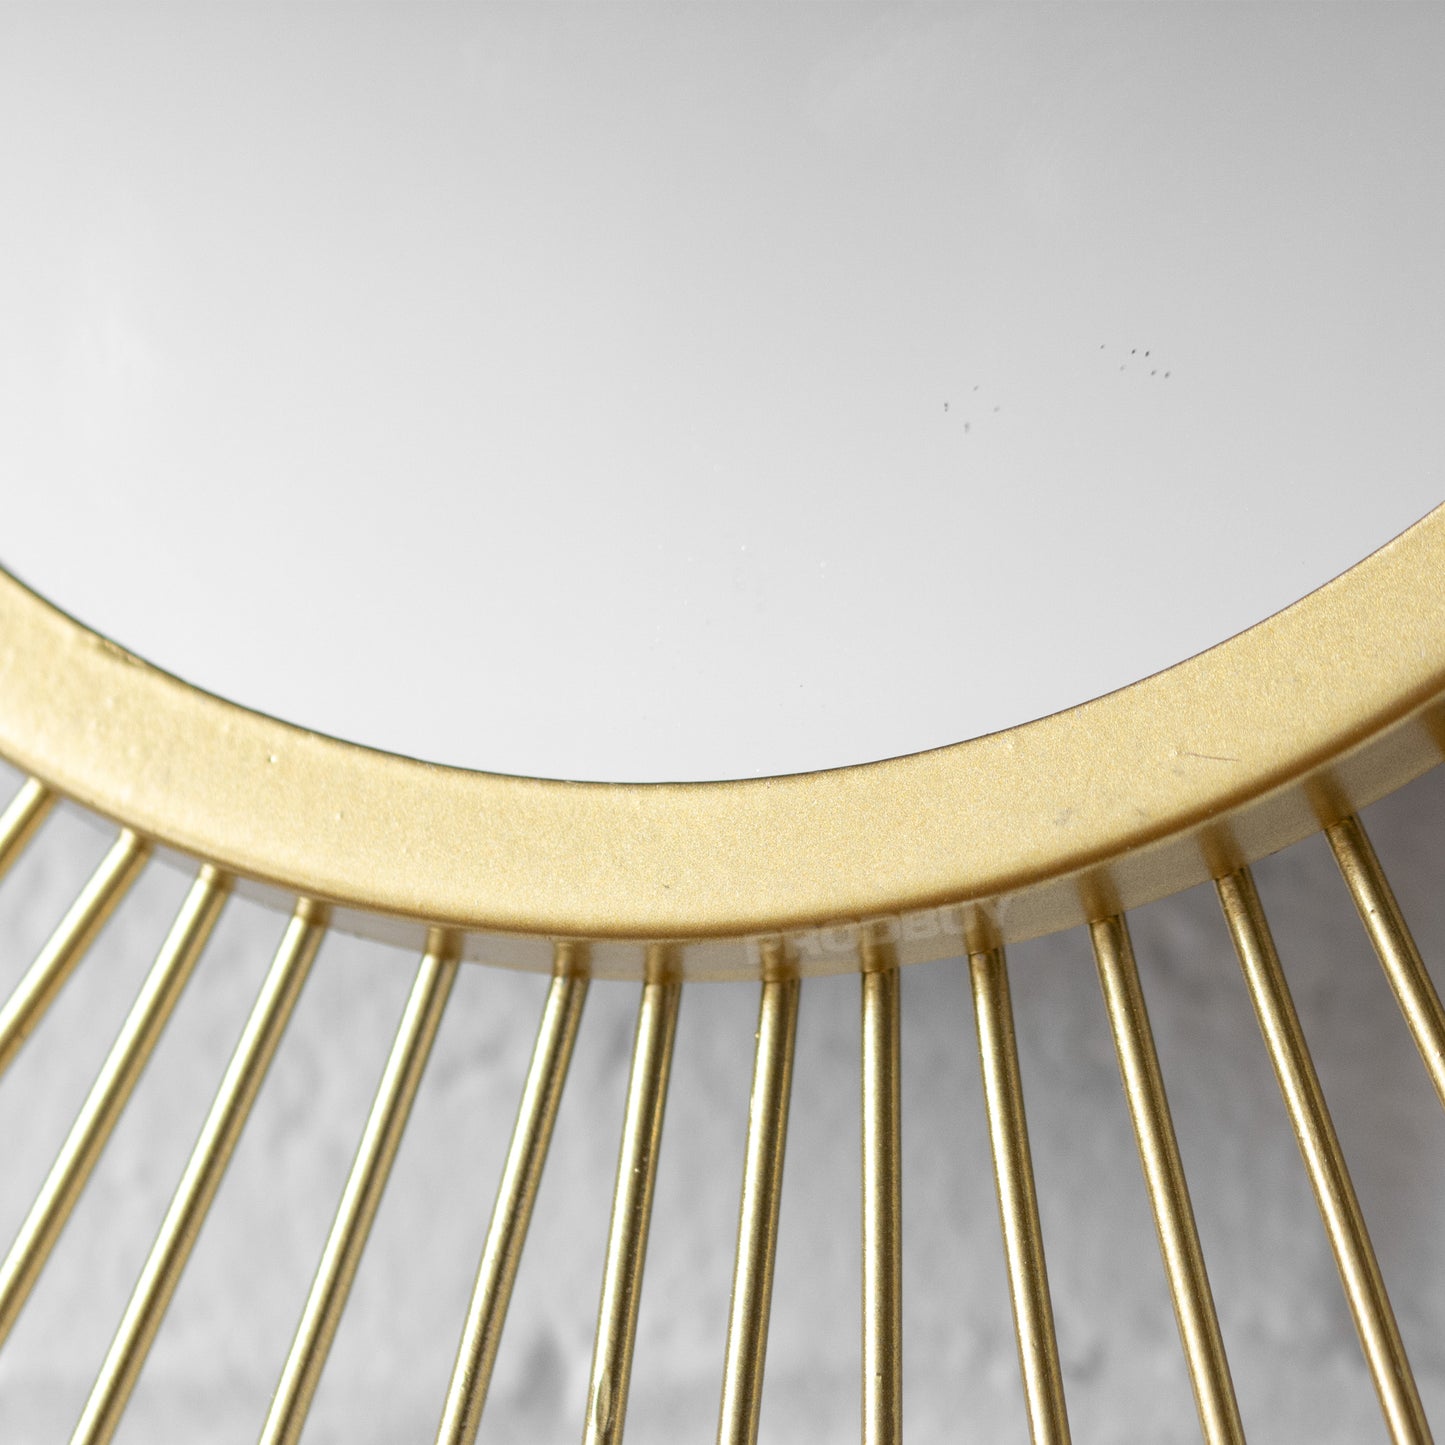 60cm Round Gold Sunburst Wall Mirror